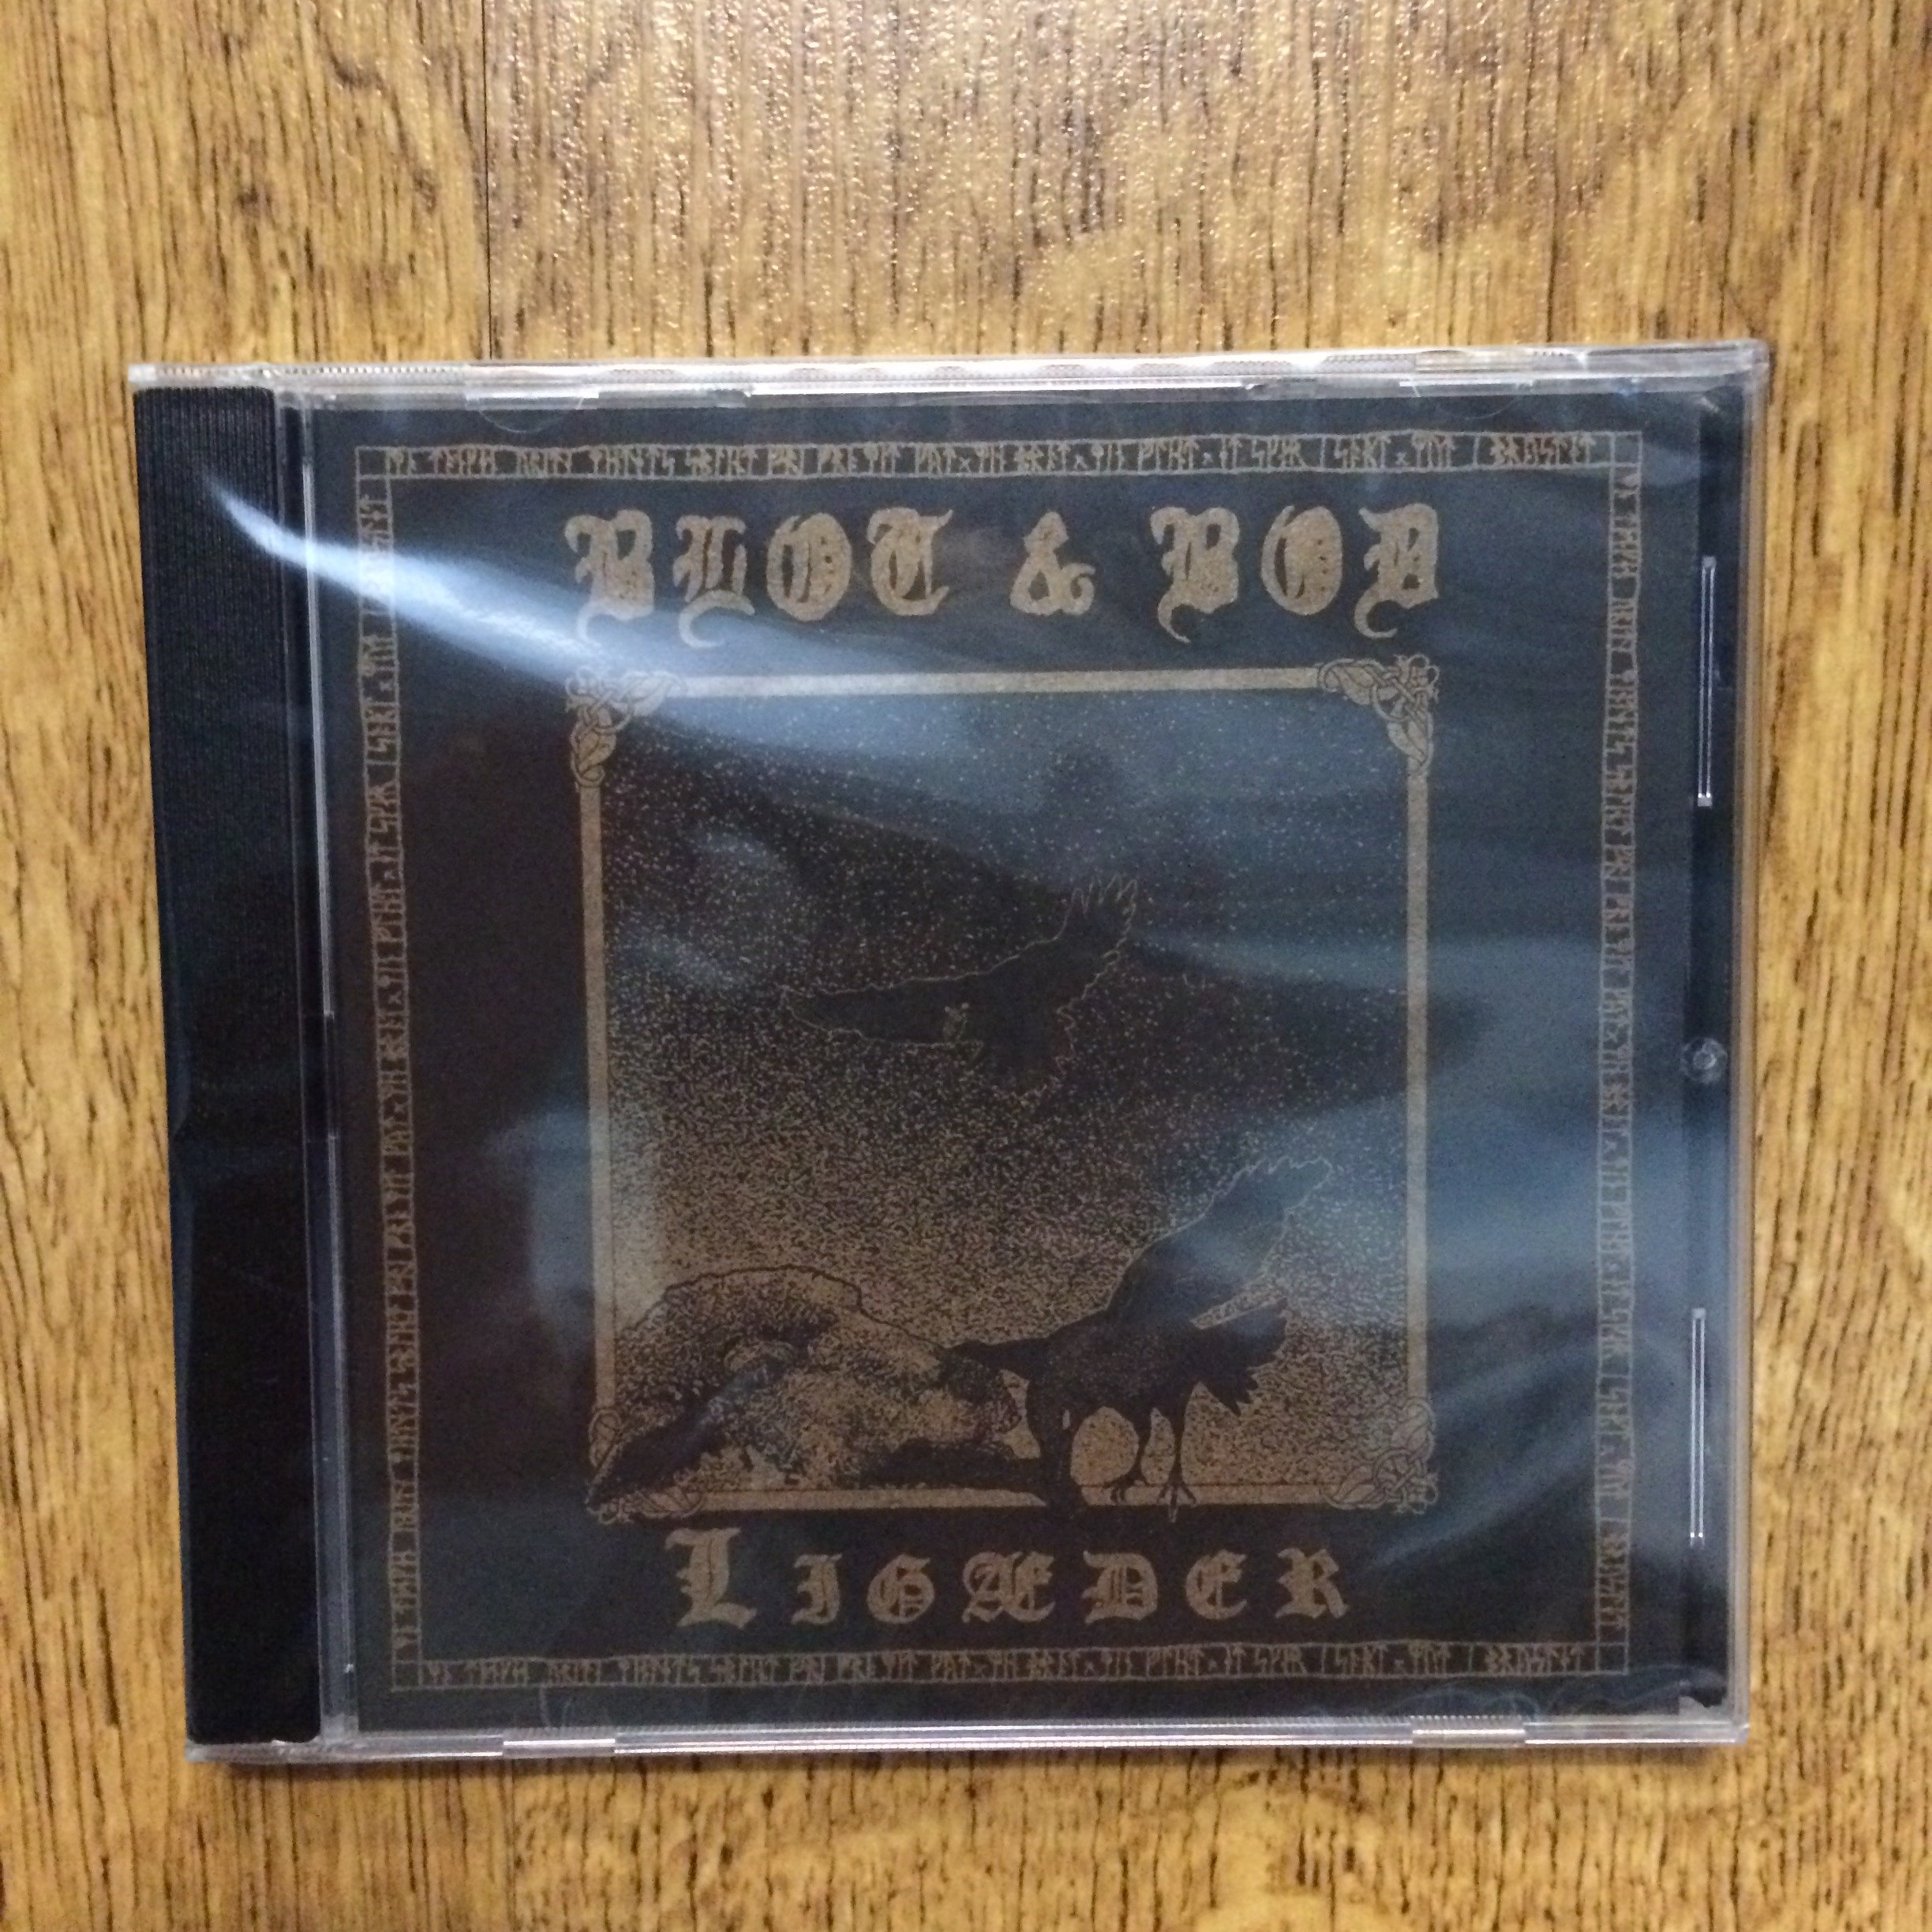 Photo of the Blot & Bod - "Ligæder" CD